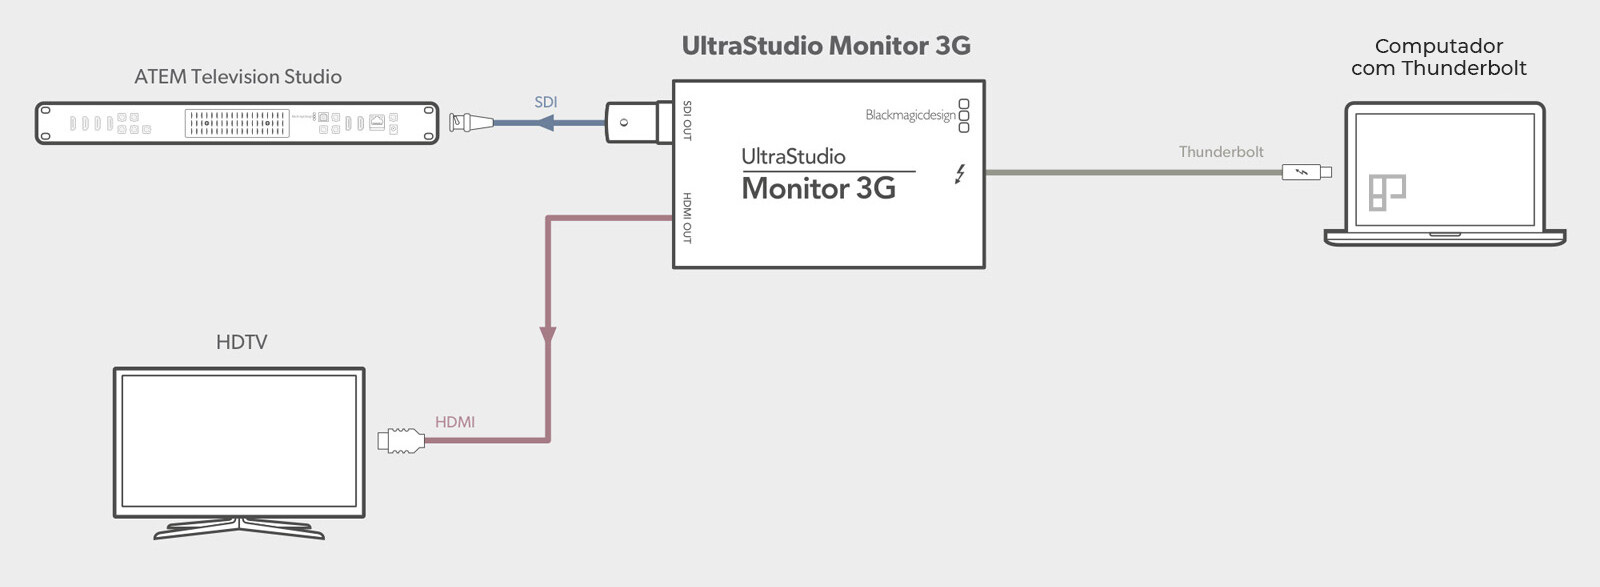 ultrastudio-monitor-3g-lg@2x (1) copy